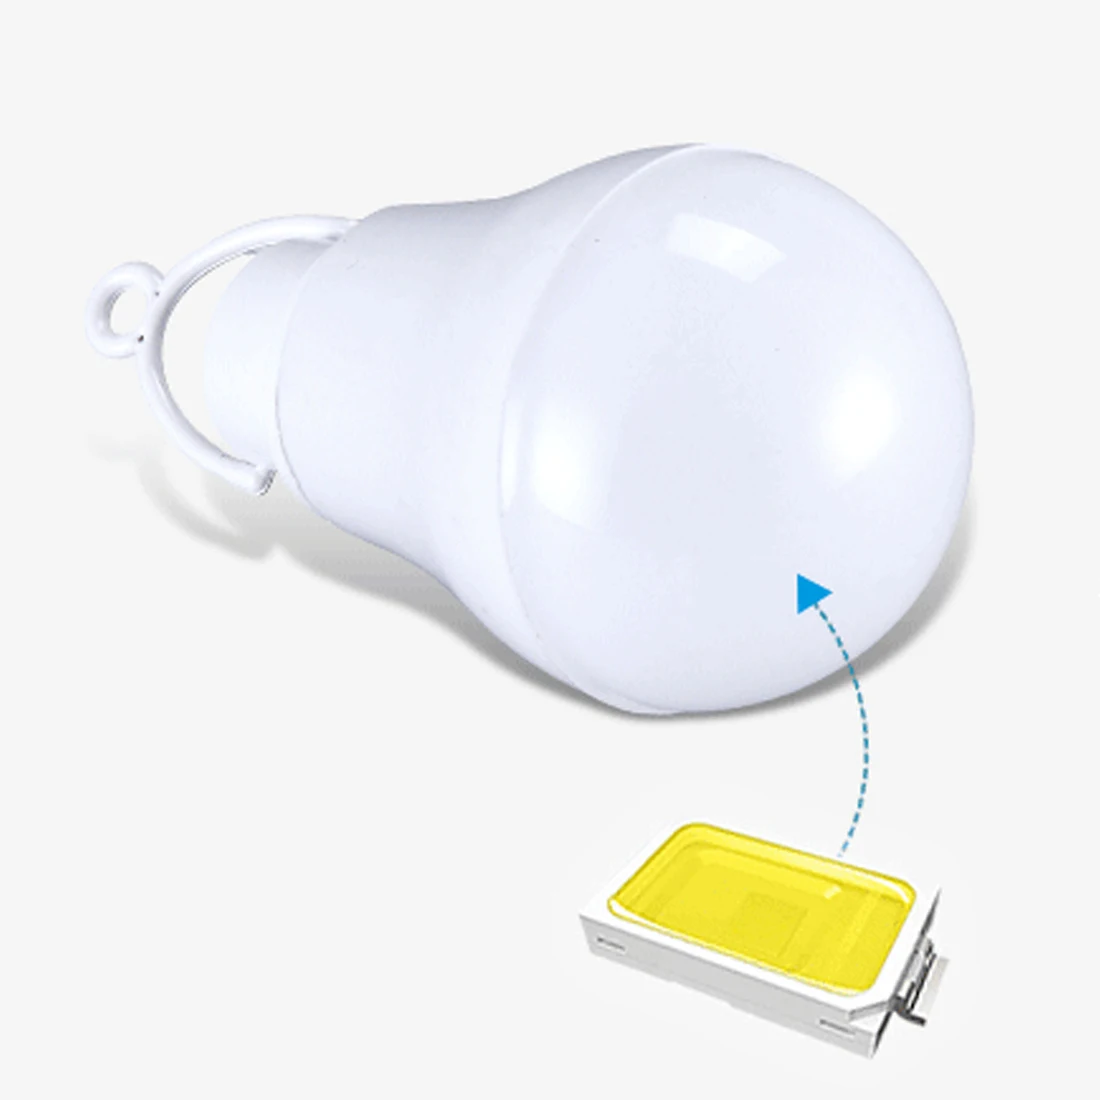 5 в 5 Вт лампочка USB светильник светодиодный 5730 для походов, кемпинга, палаток, путешествий, работы с блоком питания, ноутбука, цвет случайный, портативная лампа